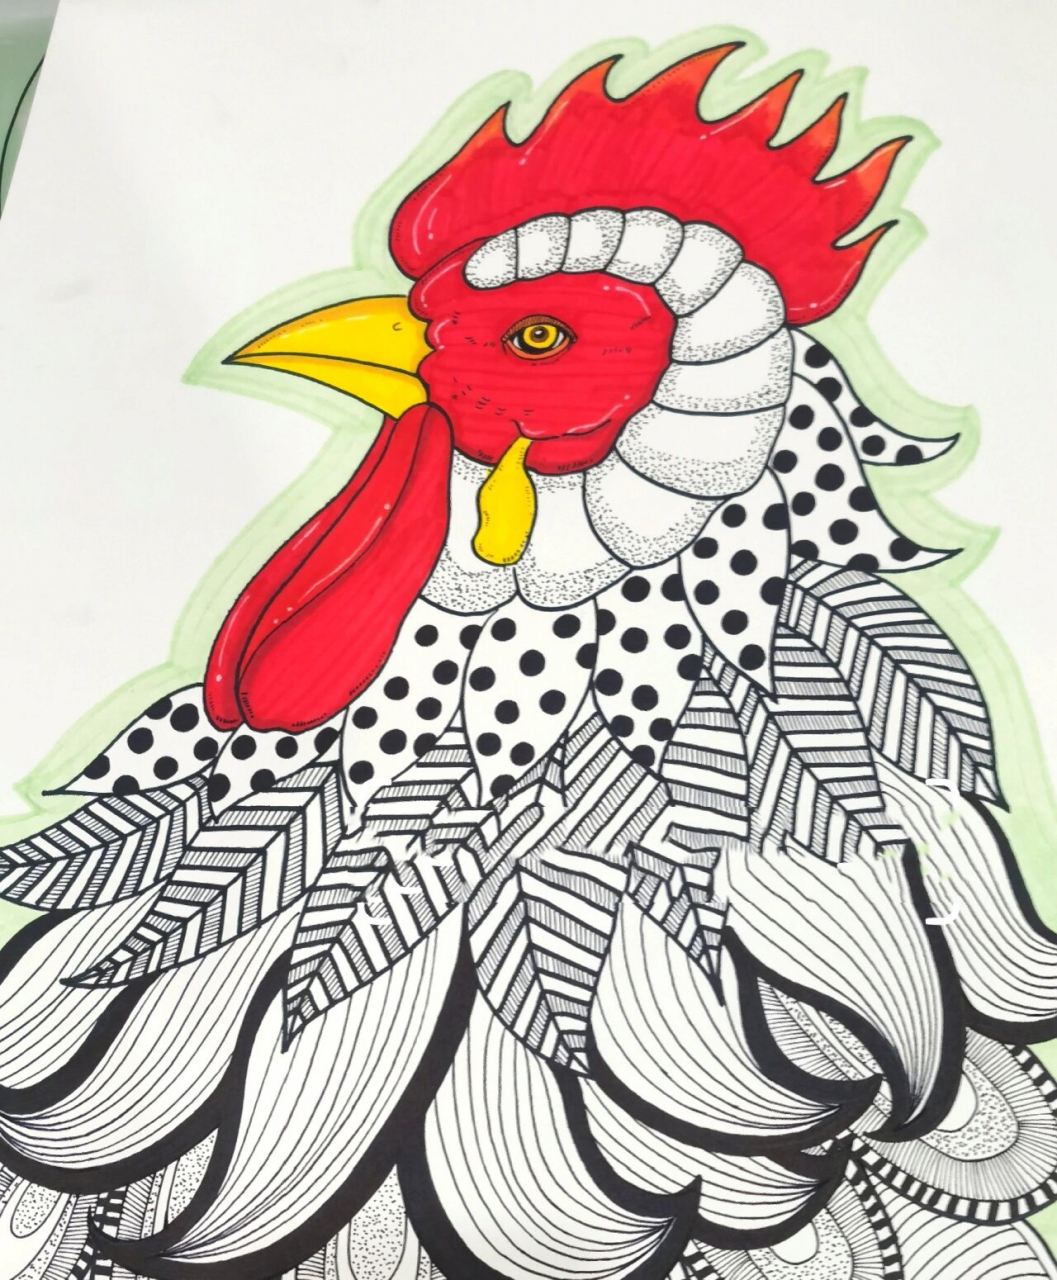 少儿公鸡线描画 适合小学生画的线描画,练习造型和控笔～ 临摹请注明